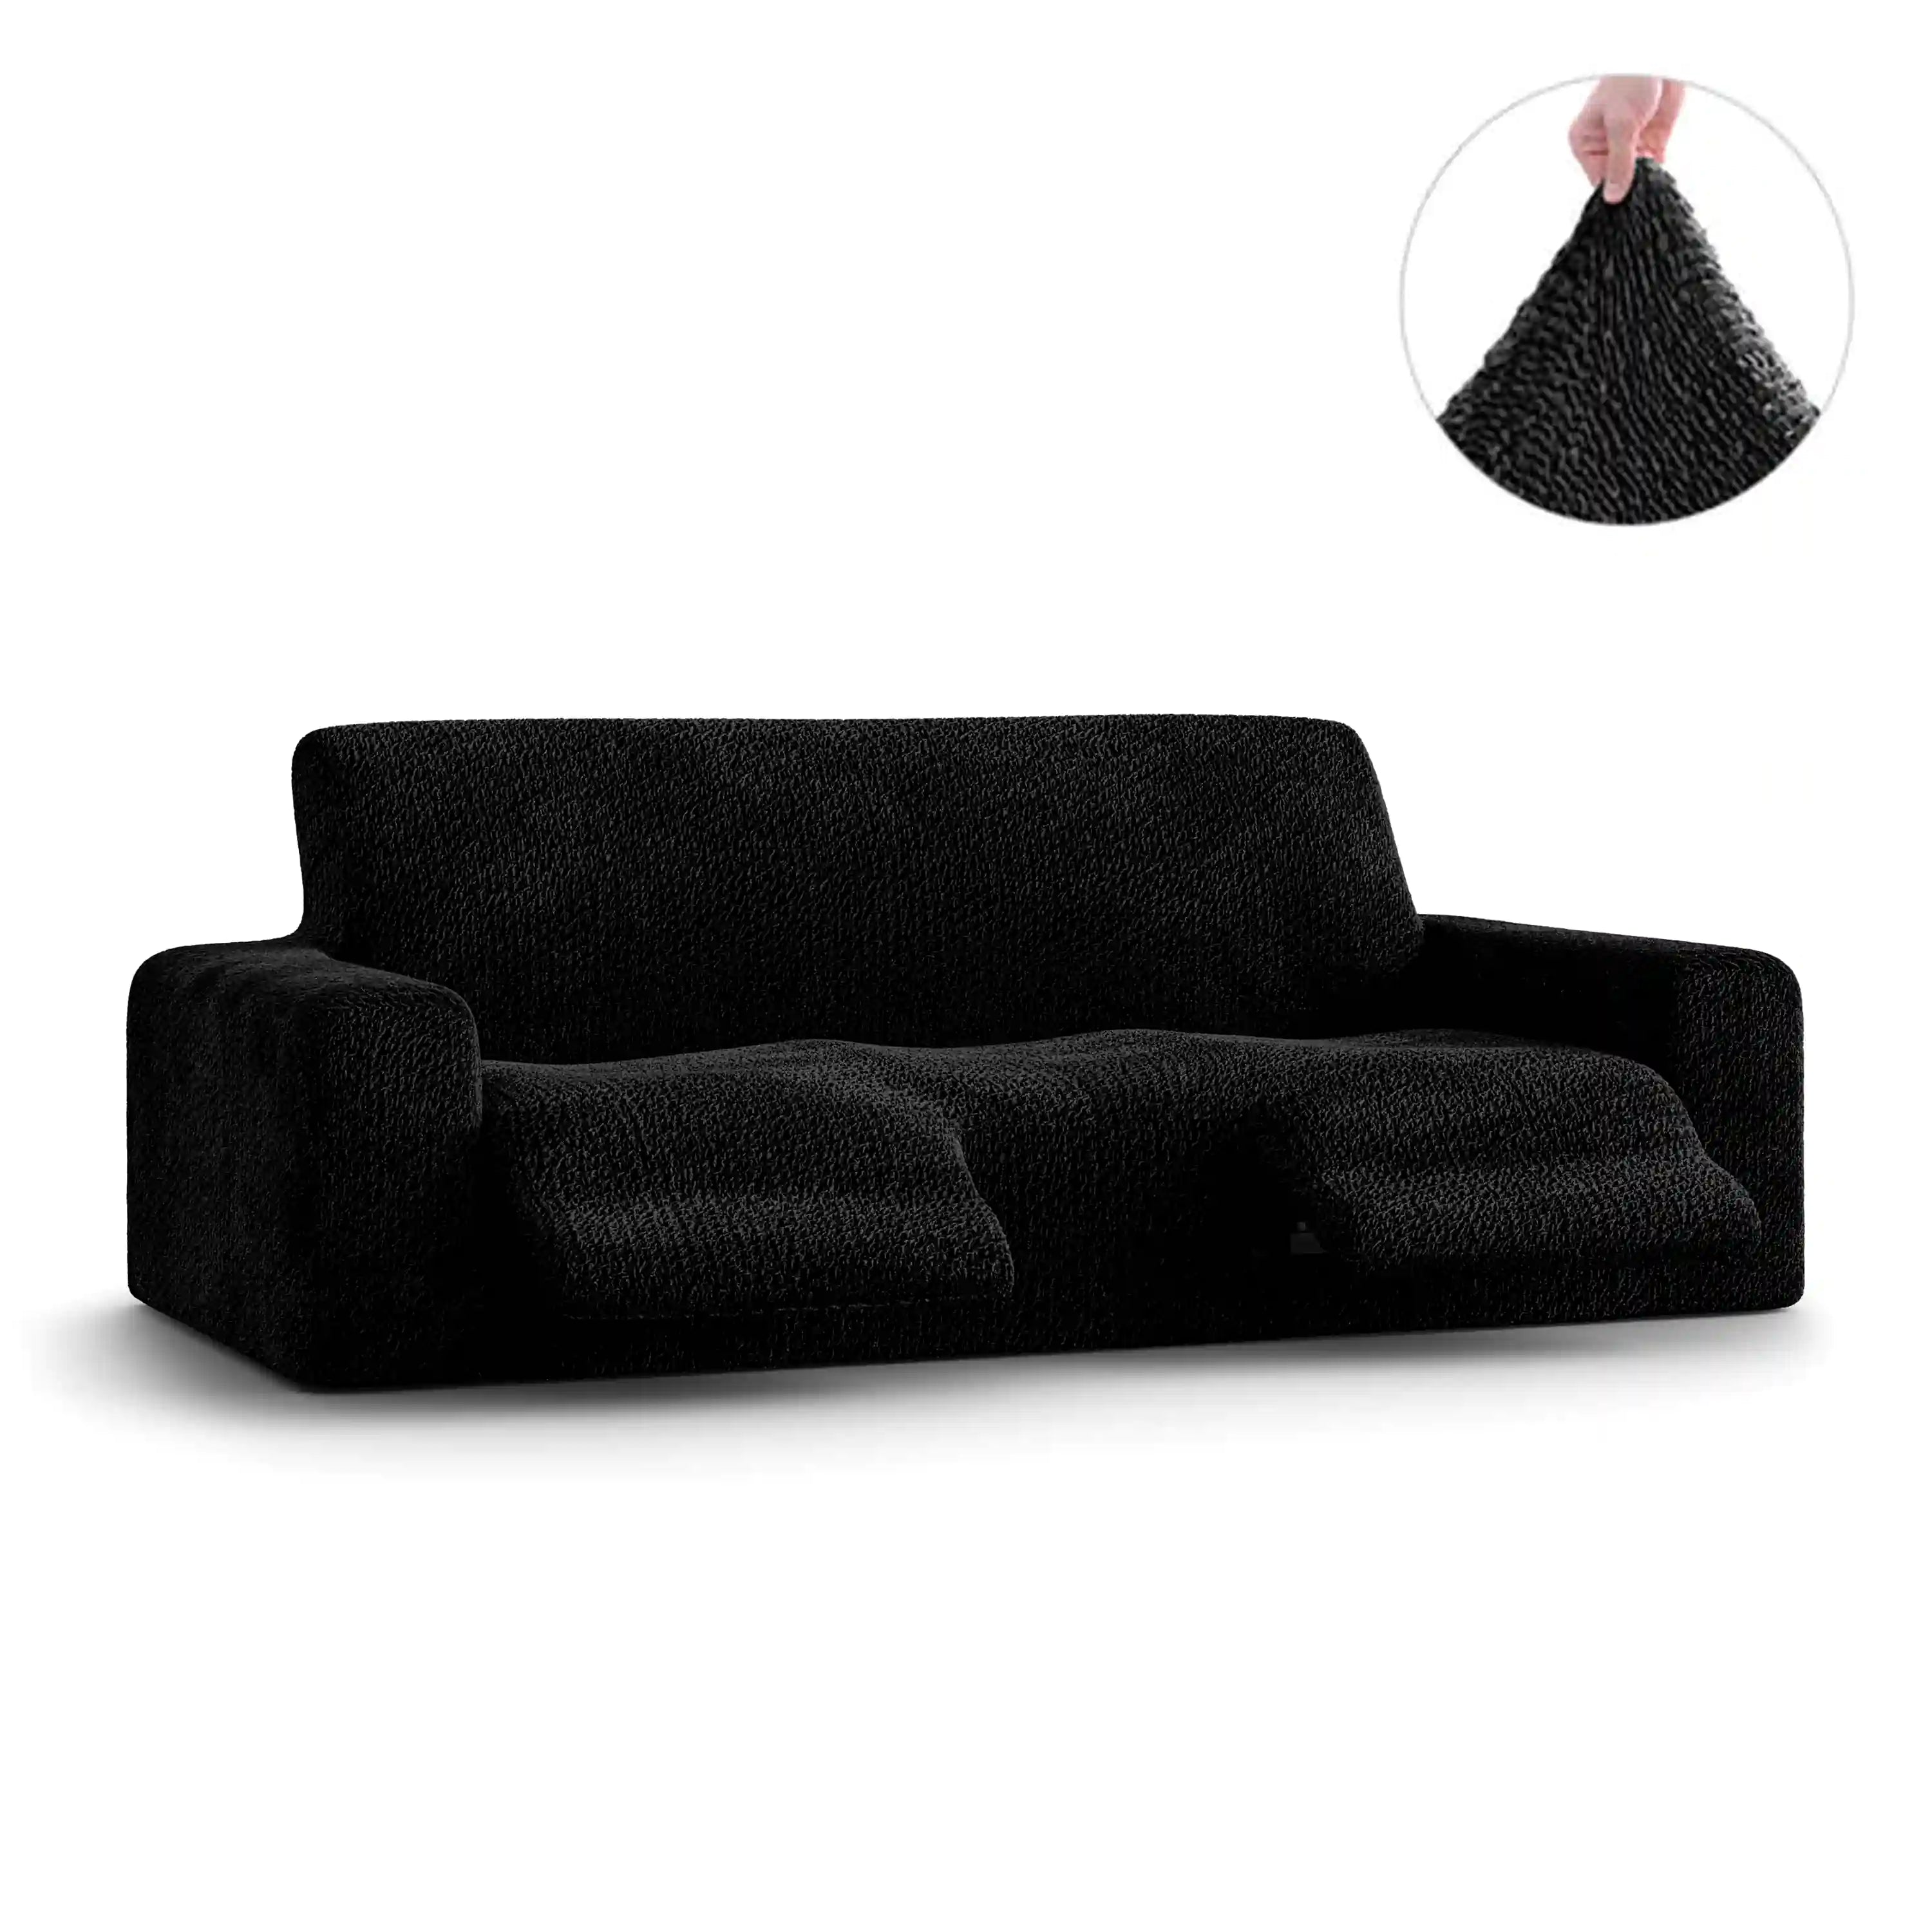 3 Seater Recliner Sofa Cover - Blасk, Velvet